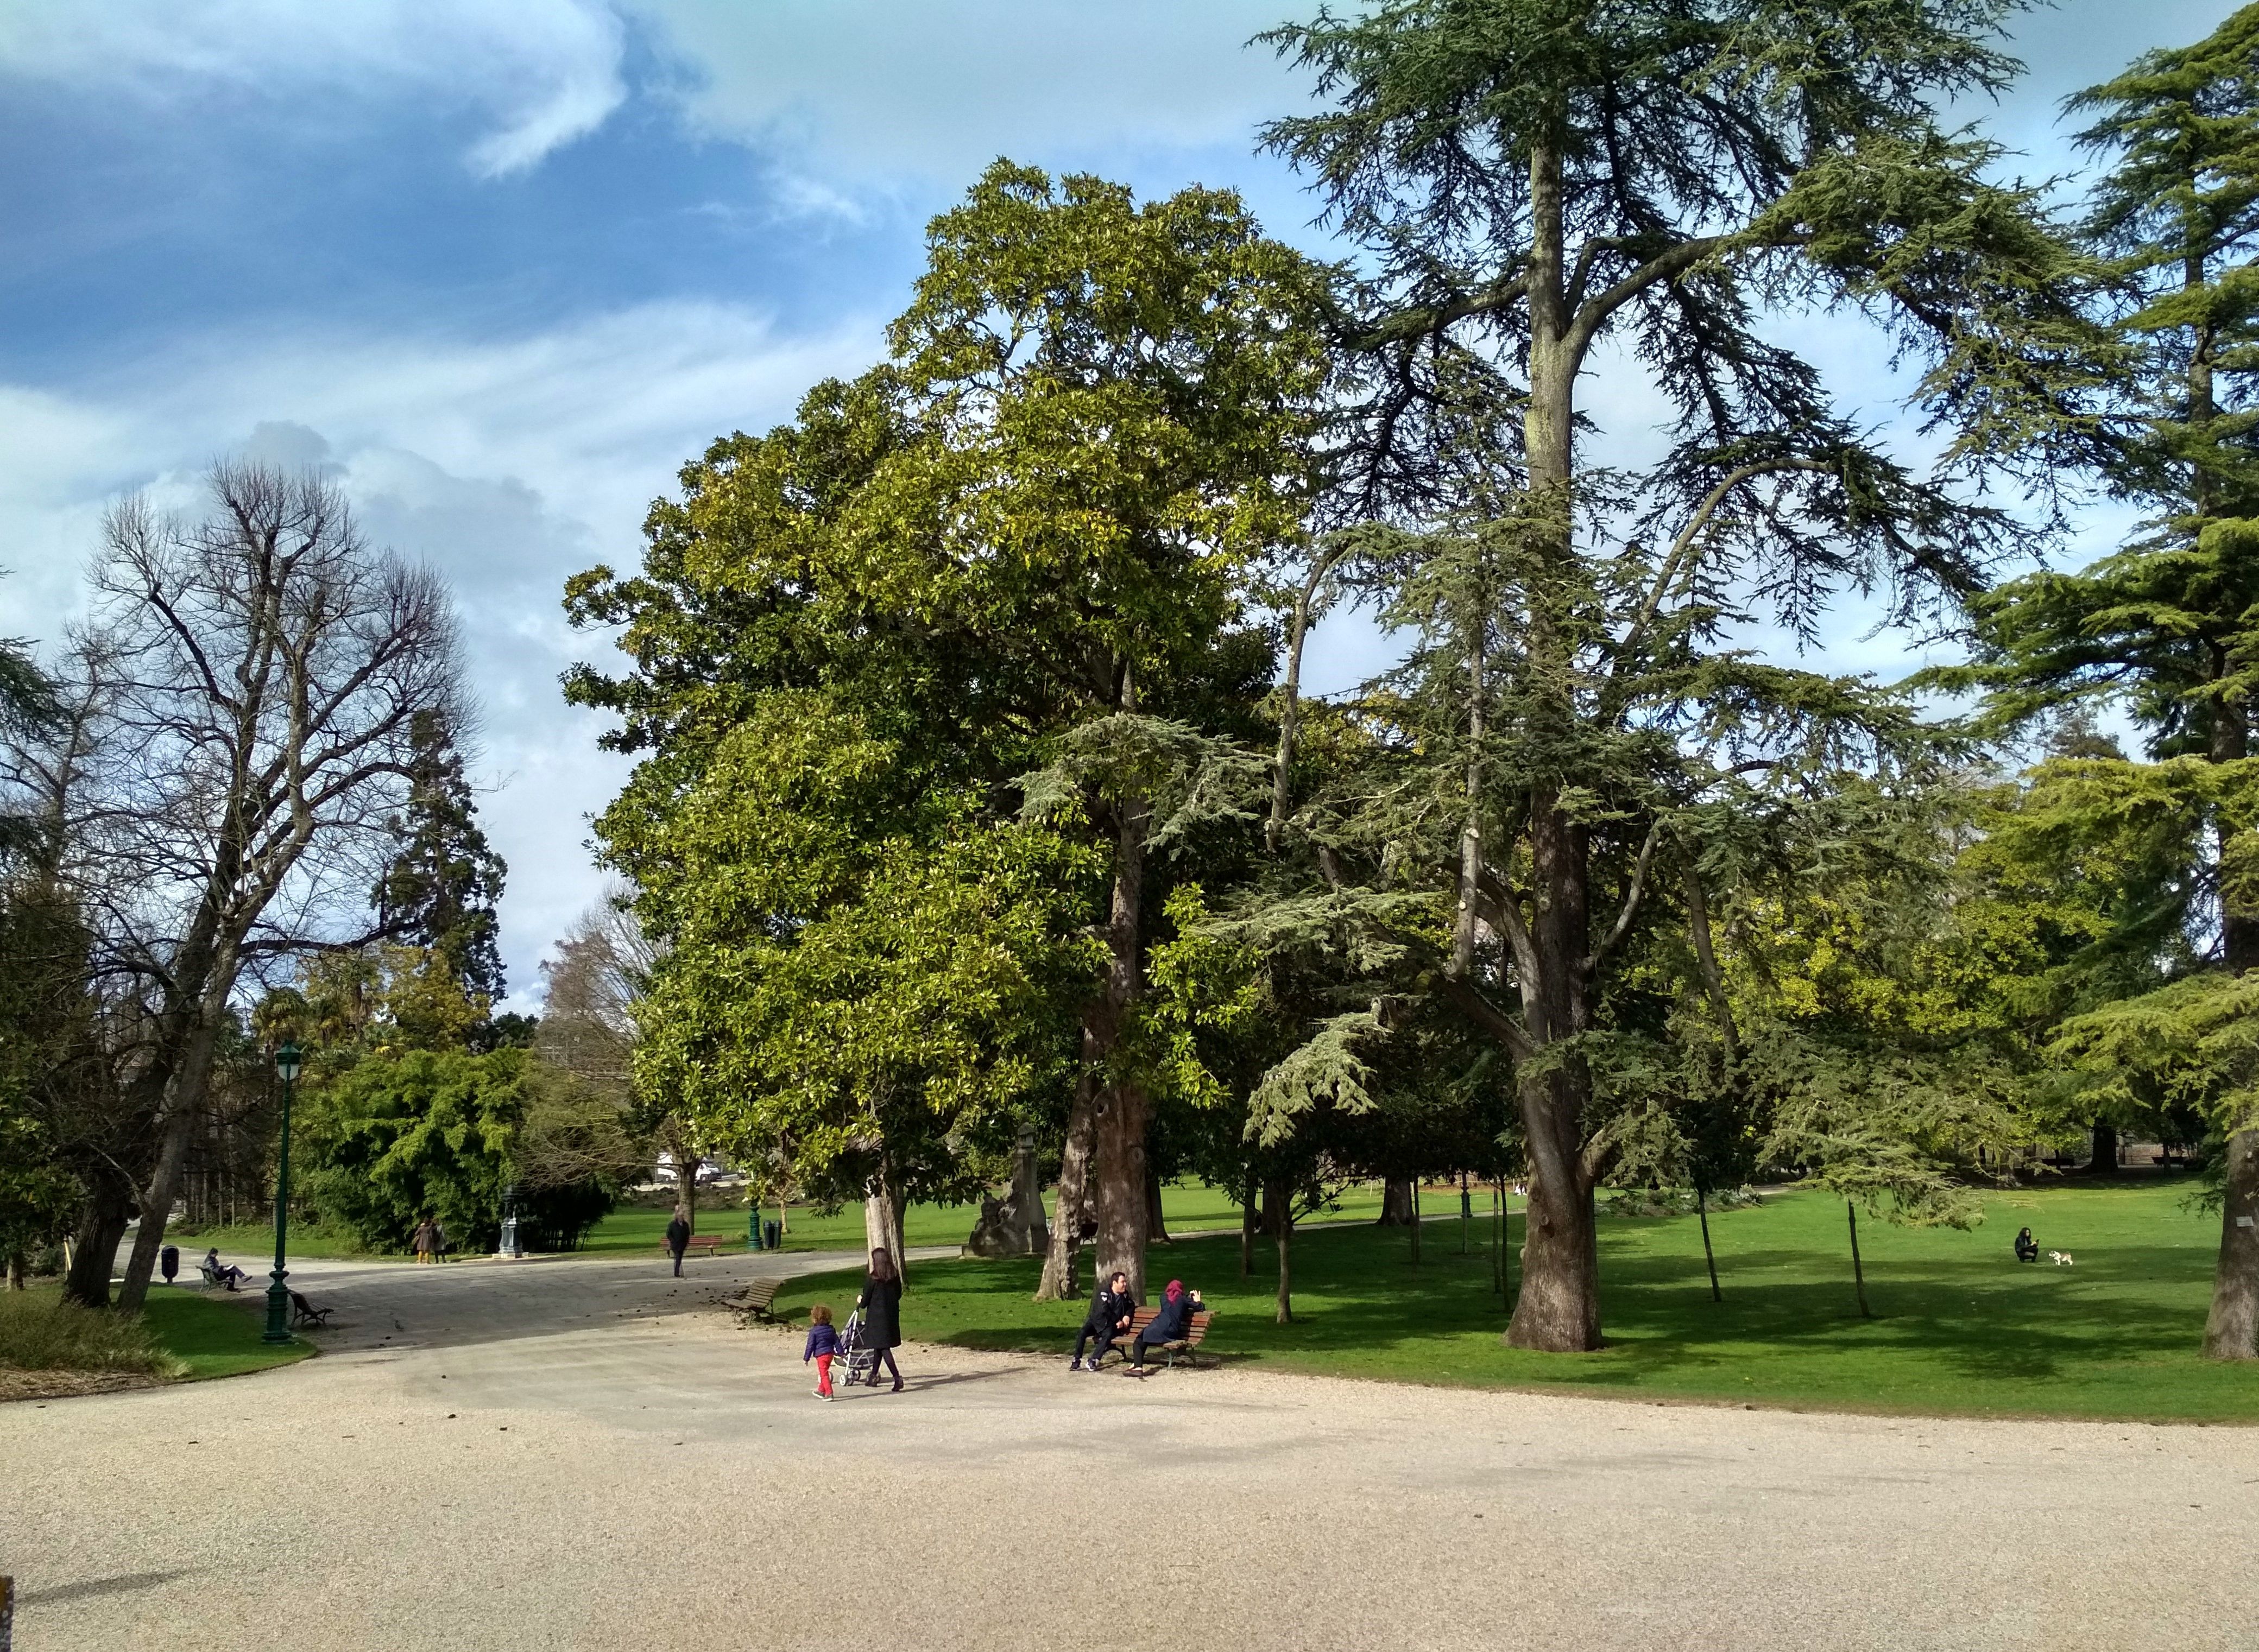 Jardin public, Bordeaux: All year